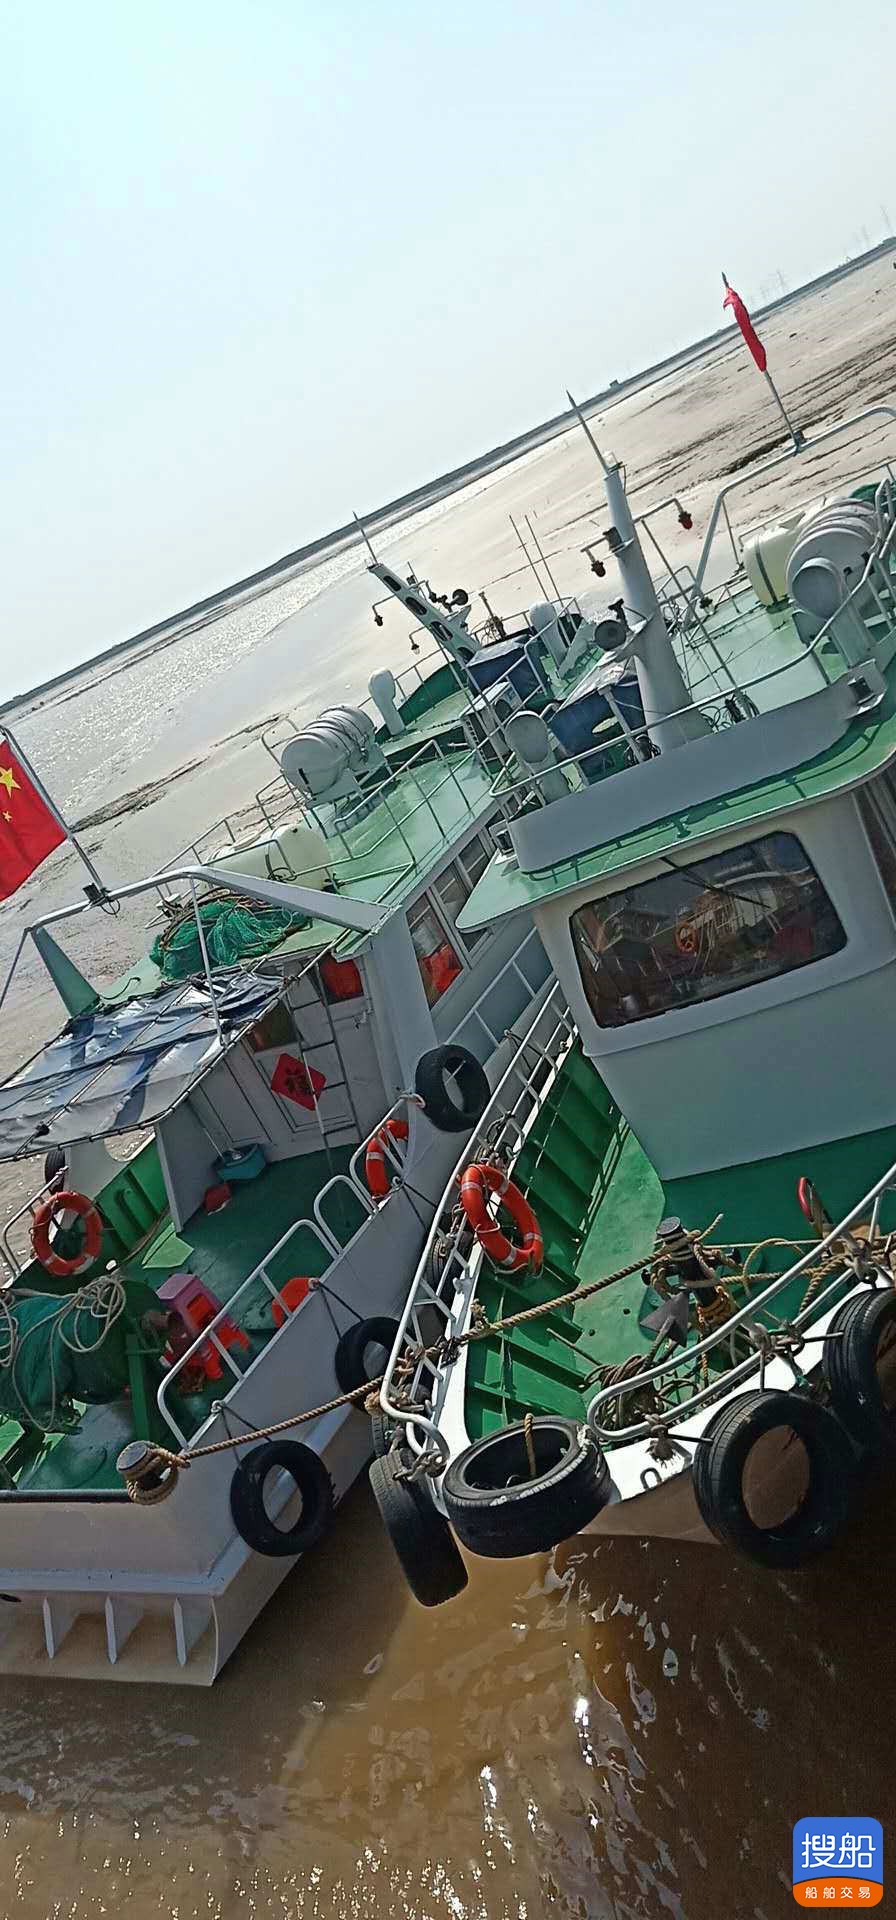 出卖2018年制13.75米遮盖航区钢量旅游艇 广东 深圳市-2.jpg